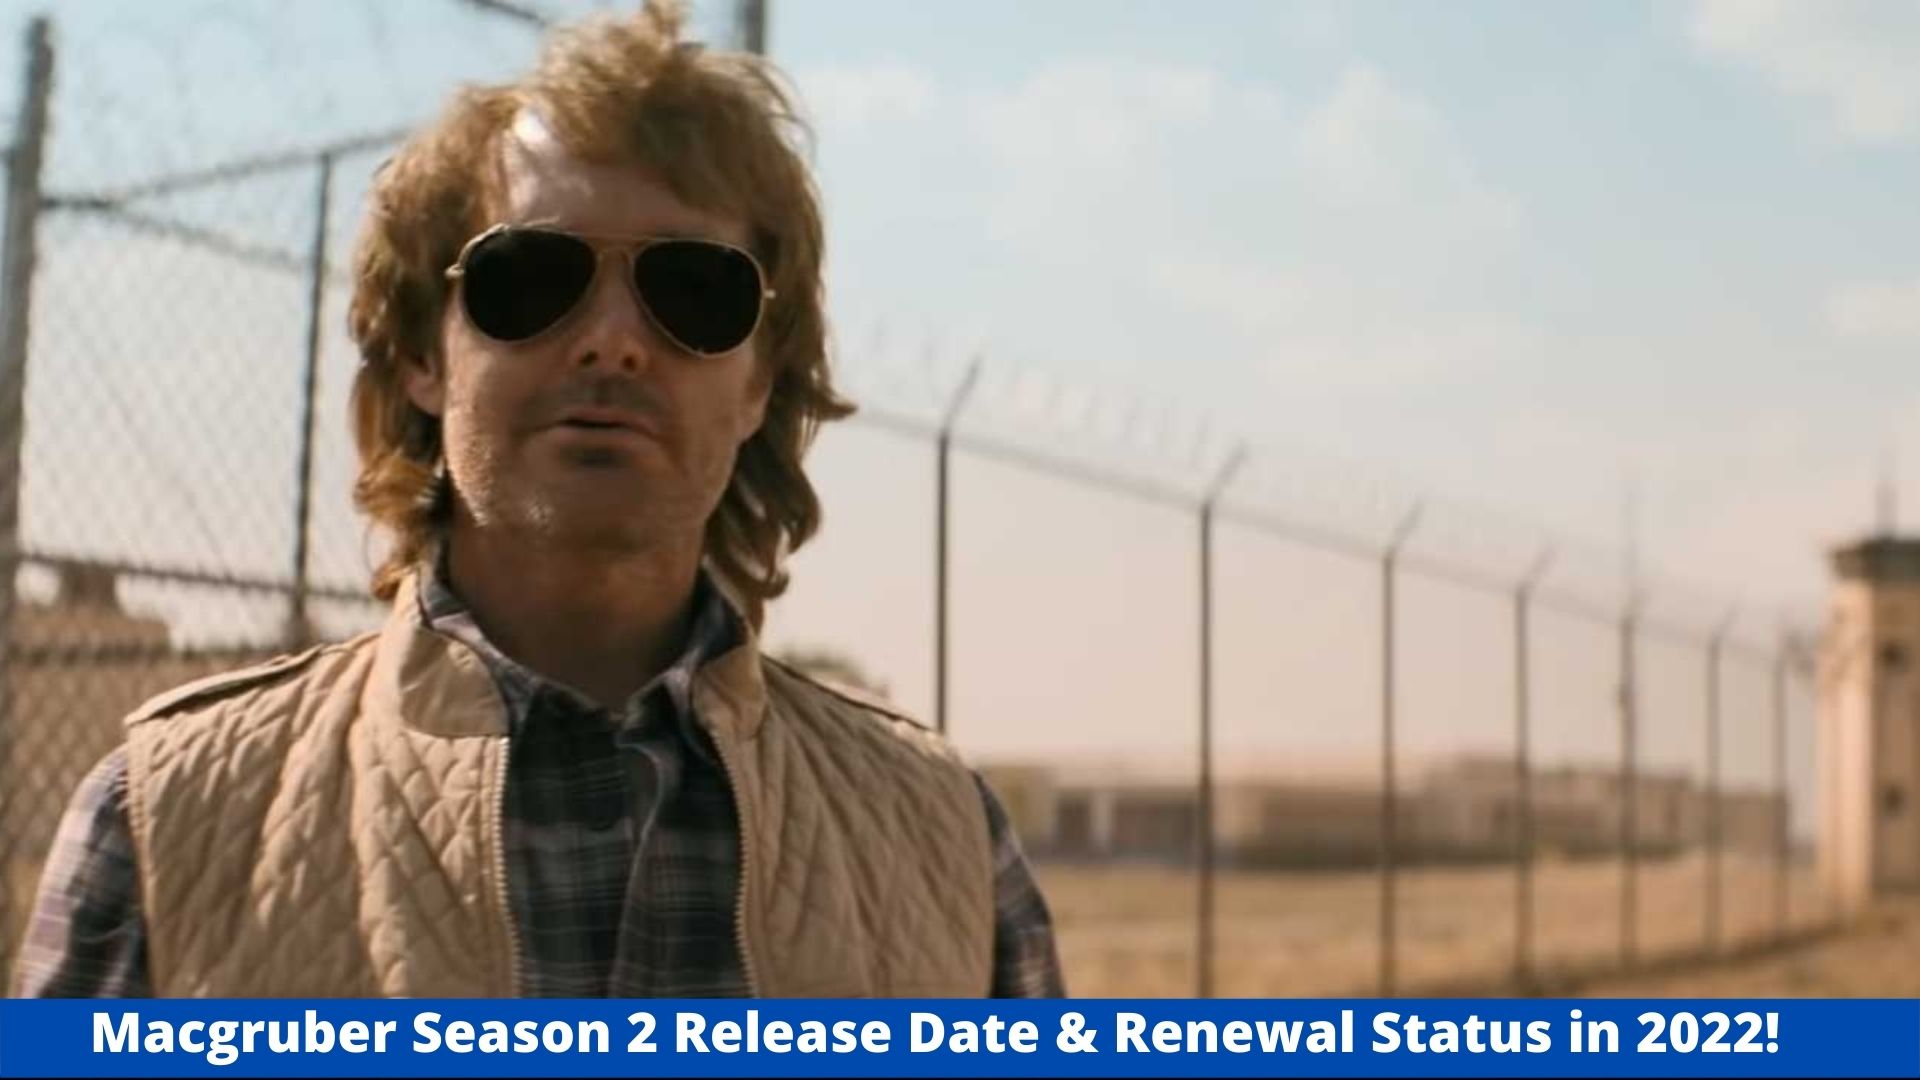 Macgruber Season 2 Release Date & Renewal Status in 2022!